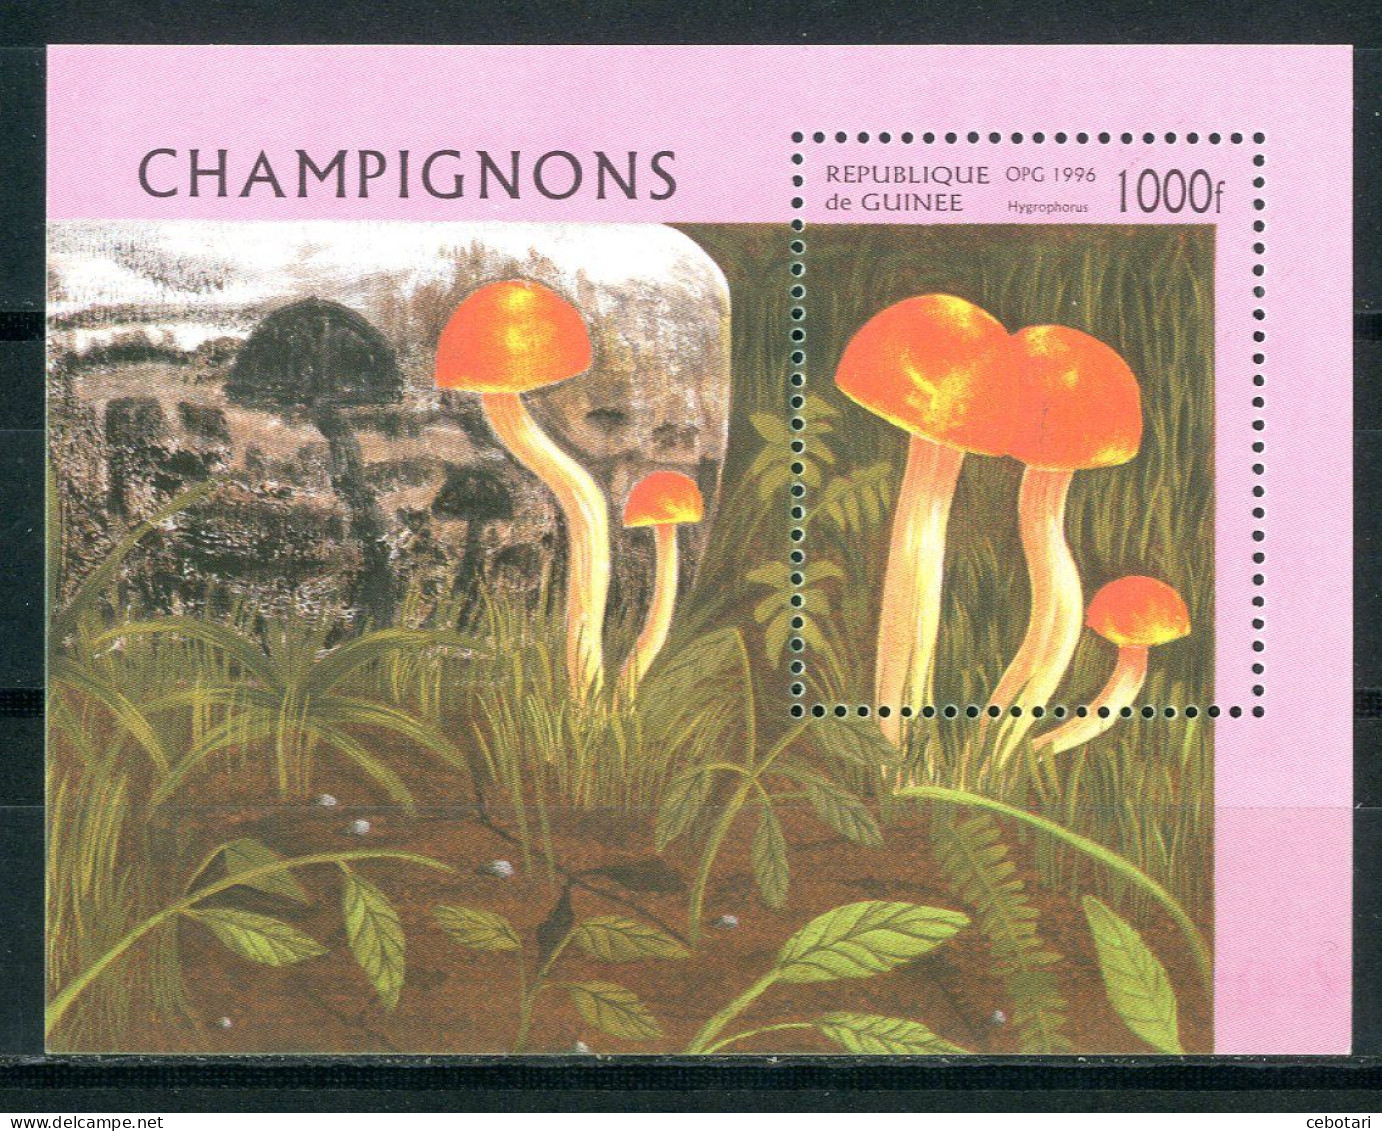 GUINEA / GUINEE 1996** - Funghi / Mushrooms - Miniblock. - Paddestoelen